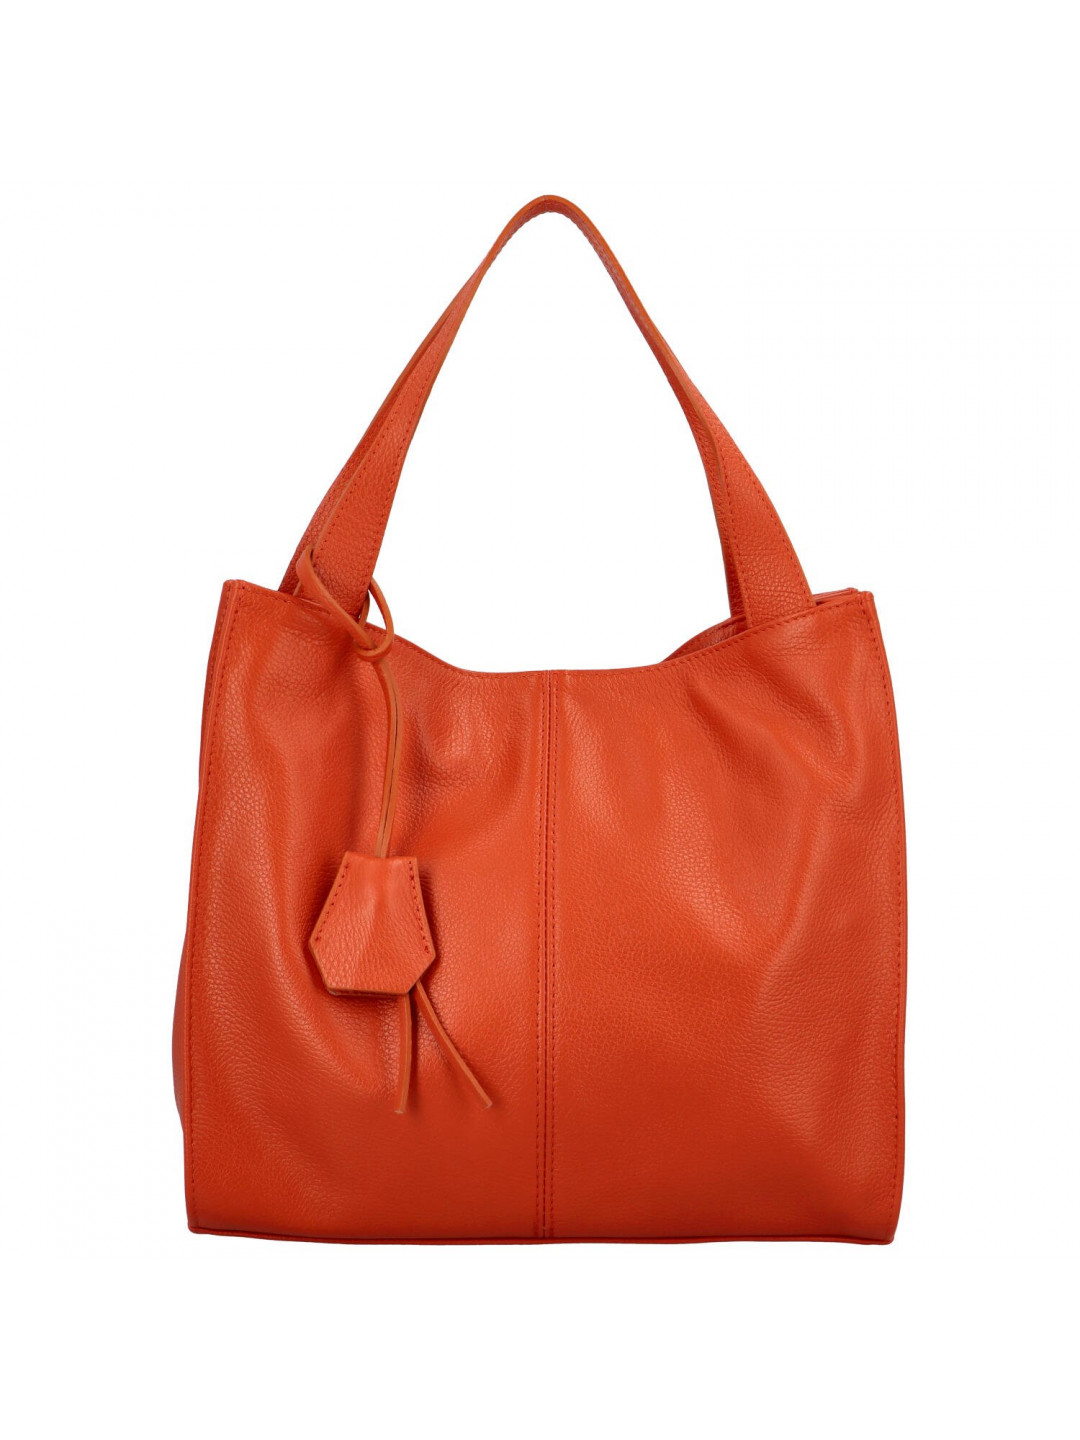 Dámská kožená kabelka přes rameno oranžová – Delami Methya